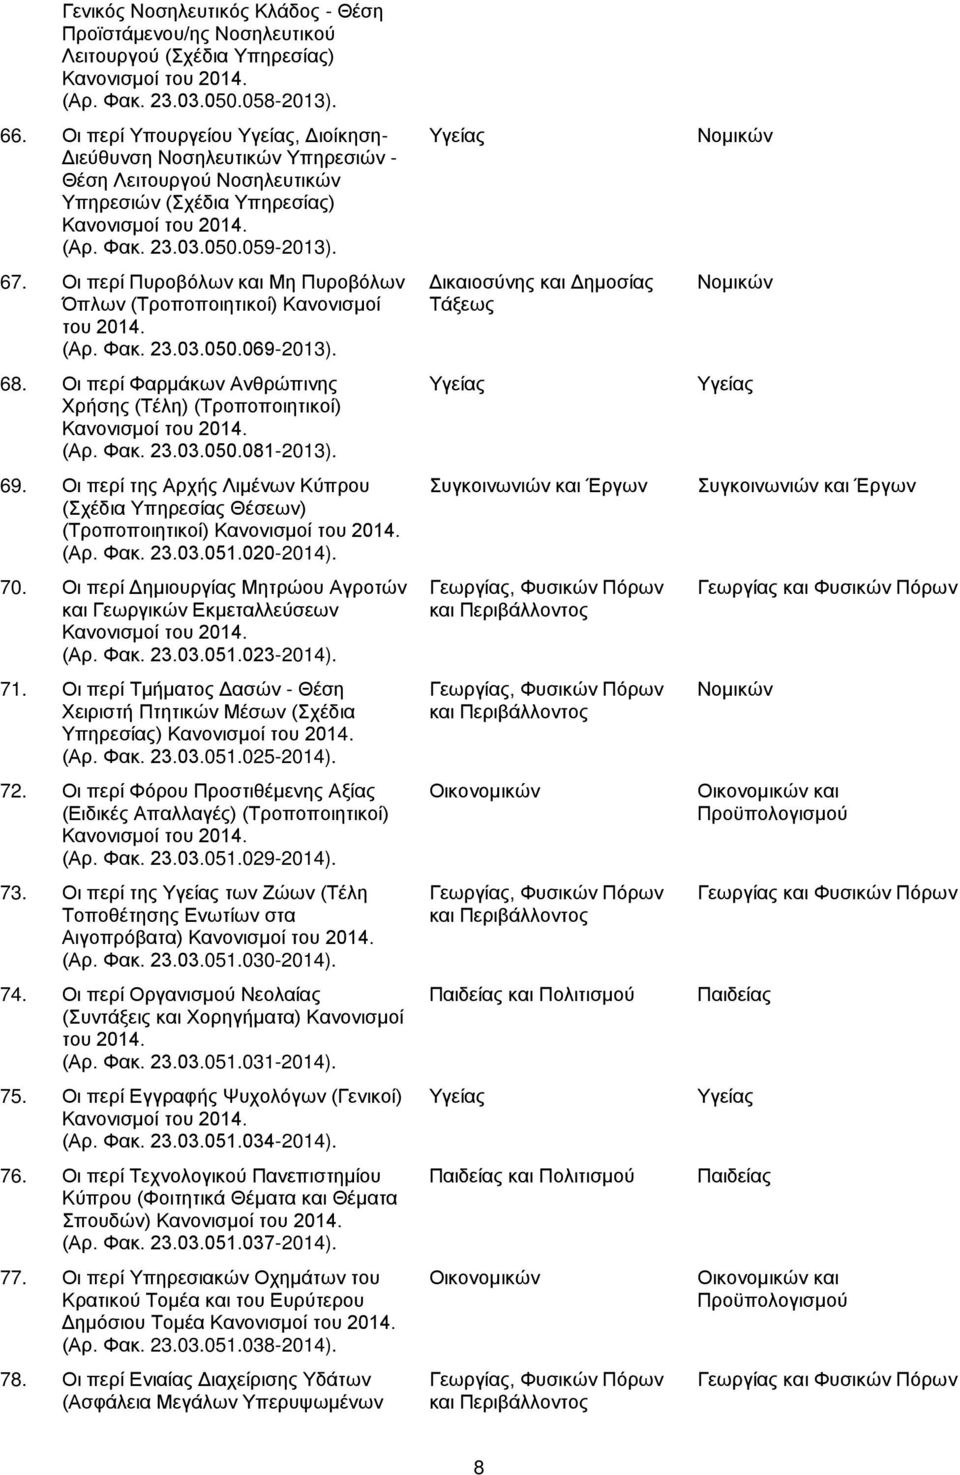 Οι περί Πυροβόλων και Μη Πυροβόλων Όπλων (Τροποποιητικοί) Κανονισμοί του 2014. (Αρ. Φακ. 23.03.050.069-2013). 68. Οι περί Φαρμάκων Ανθρώπινης Χρήσης (Τέλη) (Τροποποιητικοί) Κανονισμοί του 2014. (Αρ. Φακ. 23.03.050.081-2013).